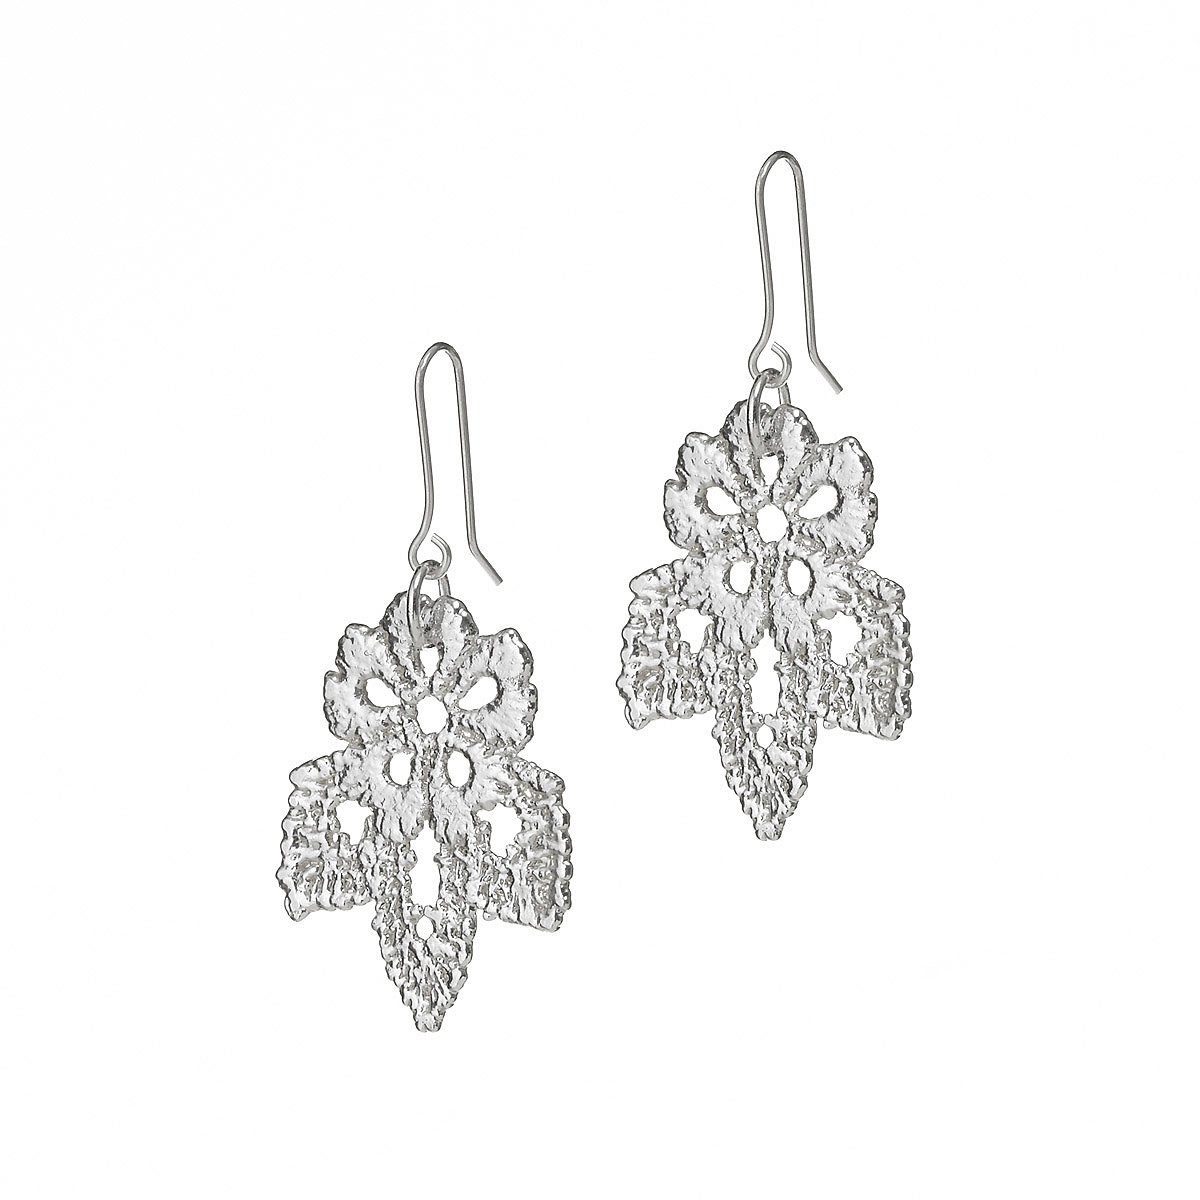 Poppy Silver Dipped Lace Earrings | lace jewelry, handmade earrings ...